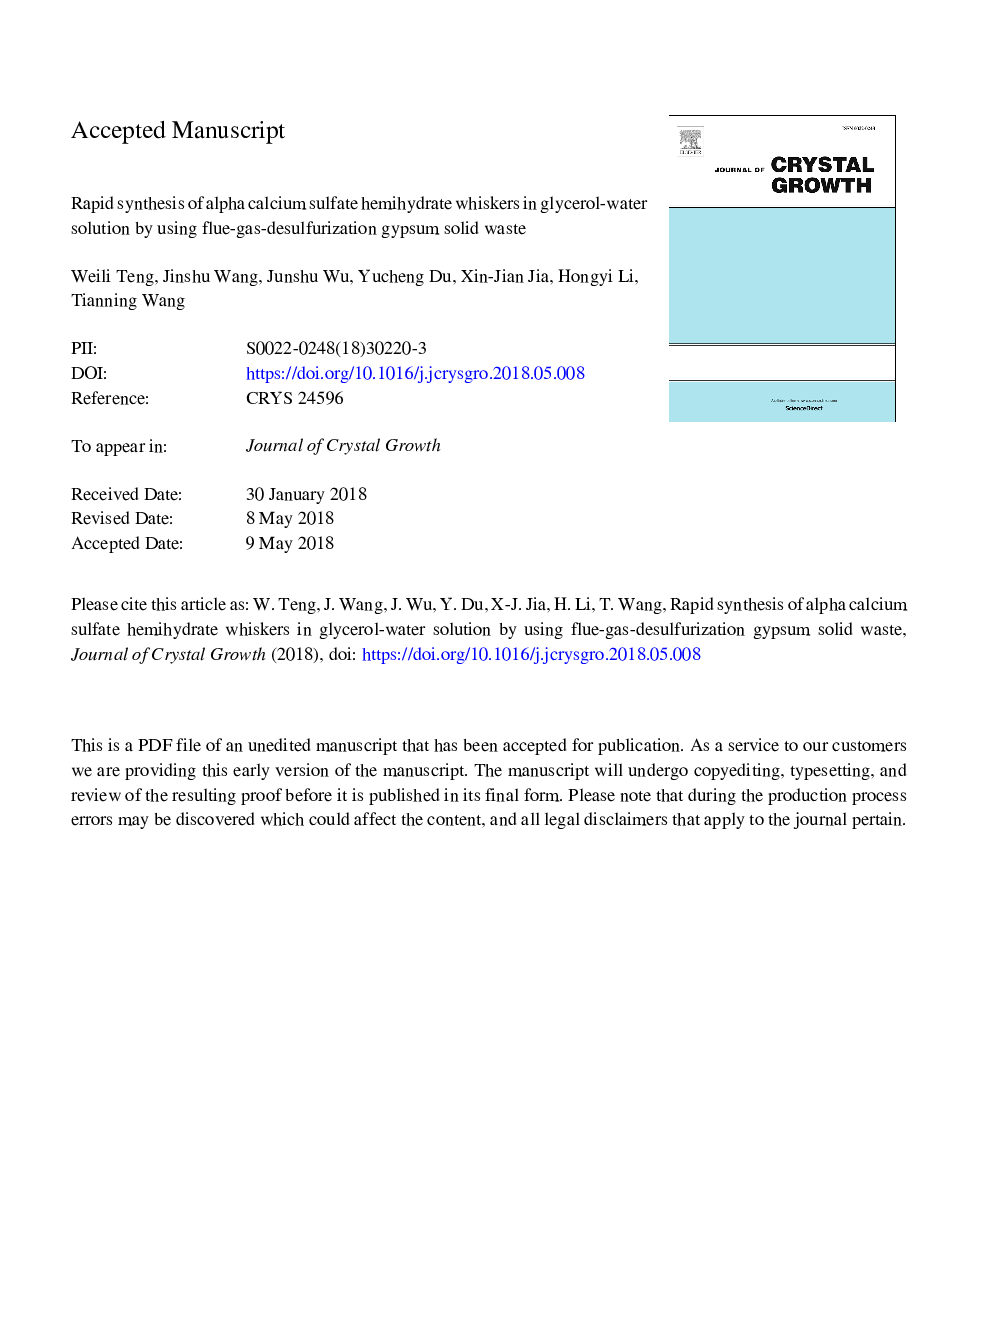 سنتز سریع سموم هیدروکربن آلفا کلسیم سولفات در محلول گلیسرول آب با استفاده از ضایعات جامد گچی گازسوز 